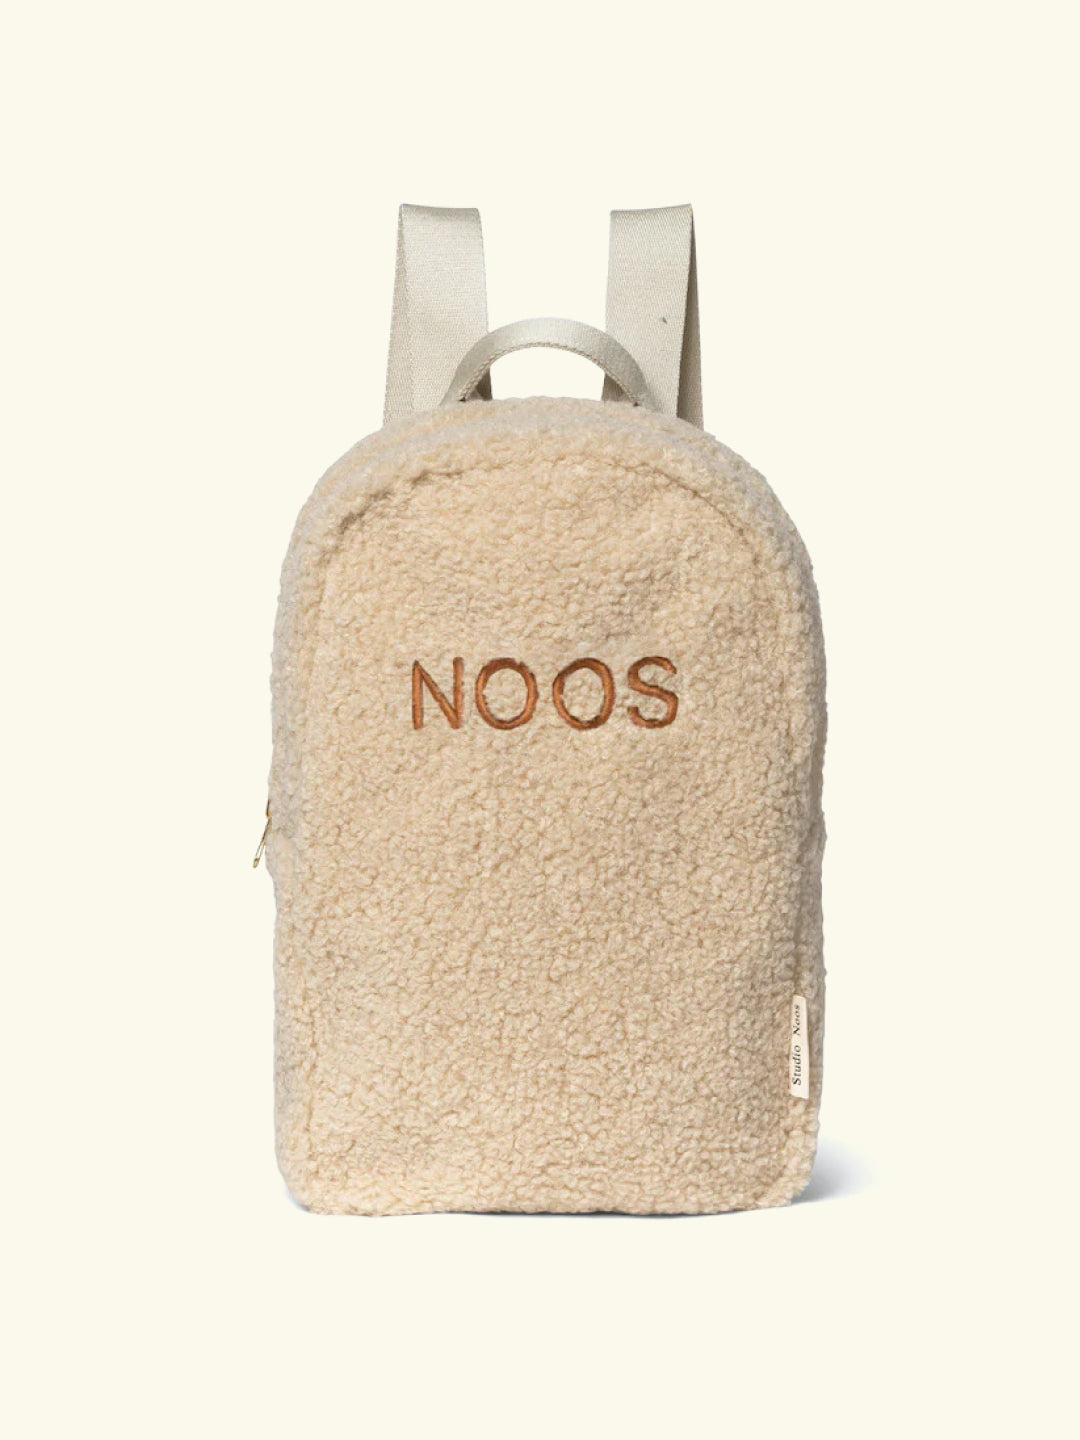 Studio Noos Personalized MIDI Backpack - Ecru, Studio Noos nimeline midi-seljakott – värv Ecru, personaliseeritud seljakott